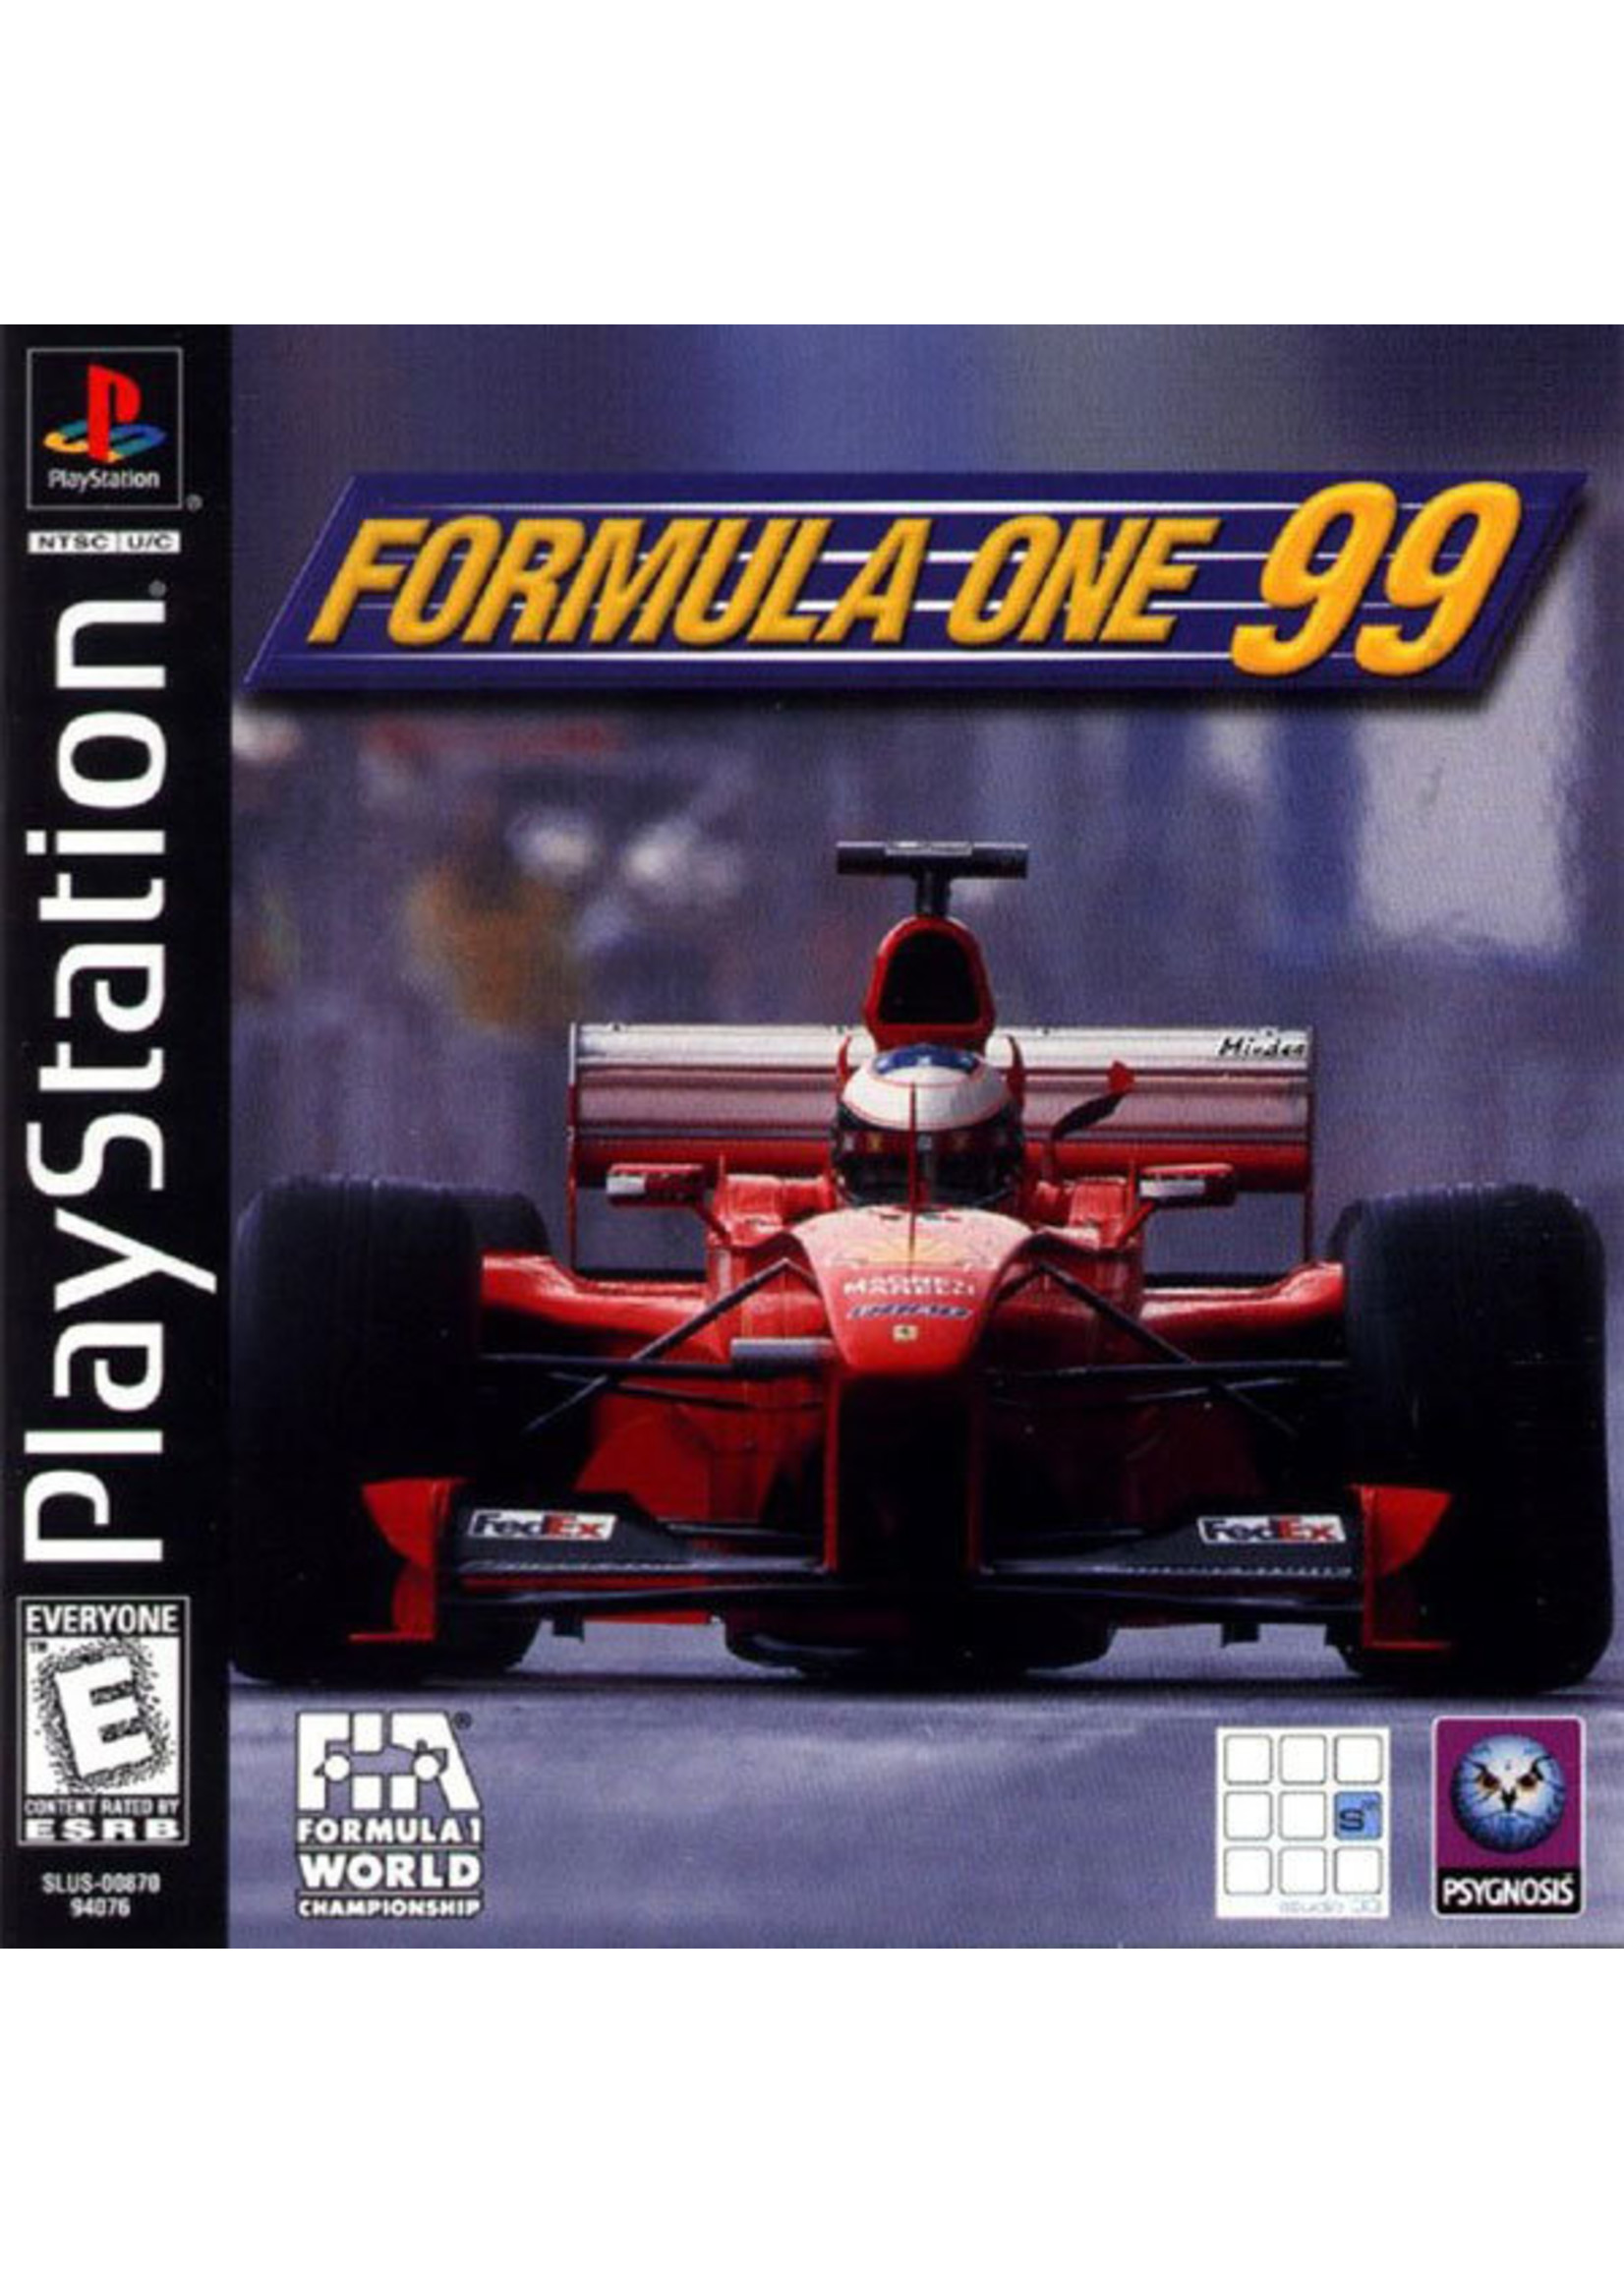 Sony Playstation 1 (PS1) Formula 1 99